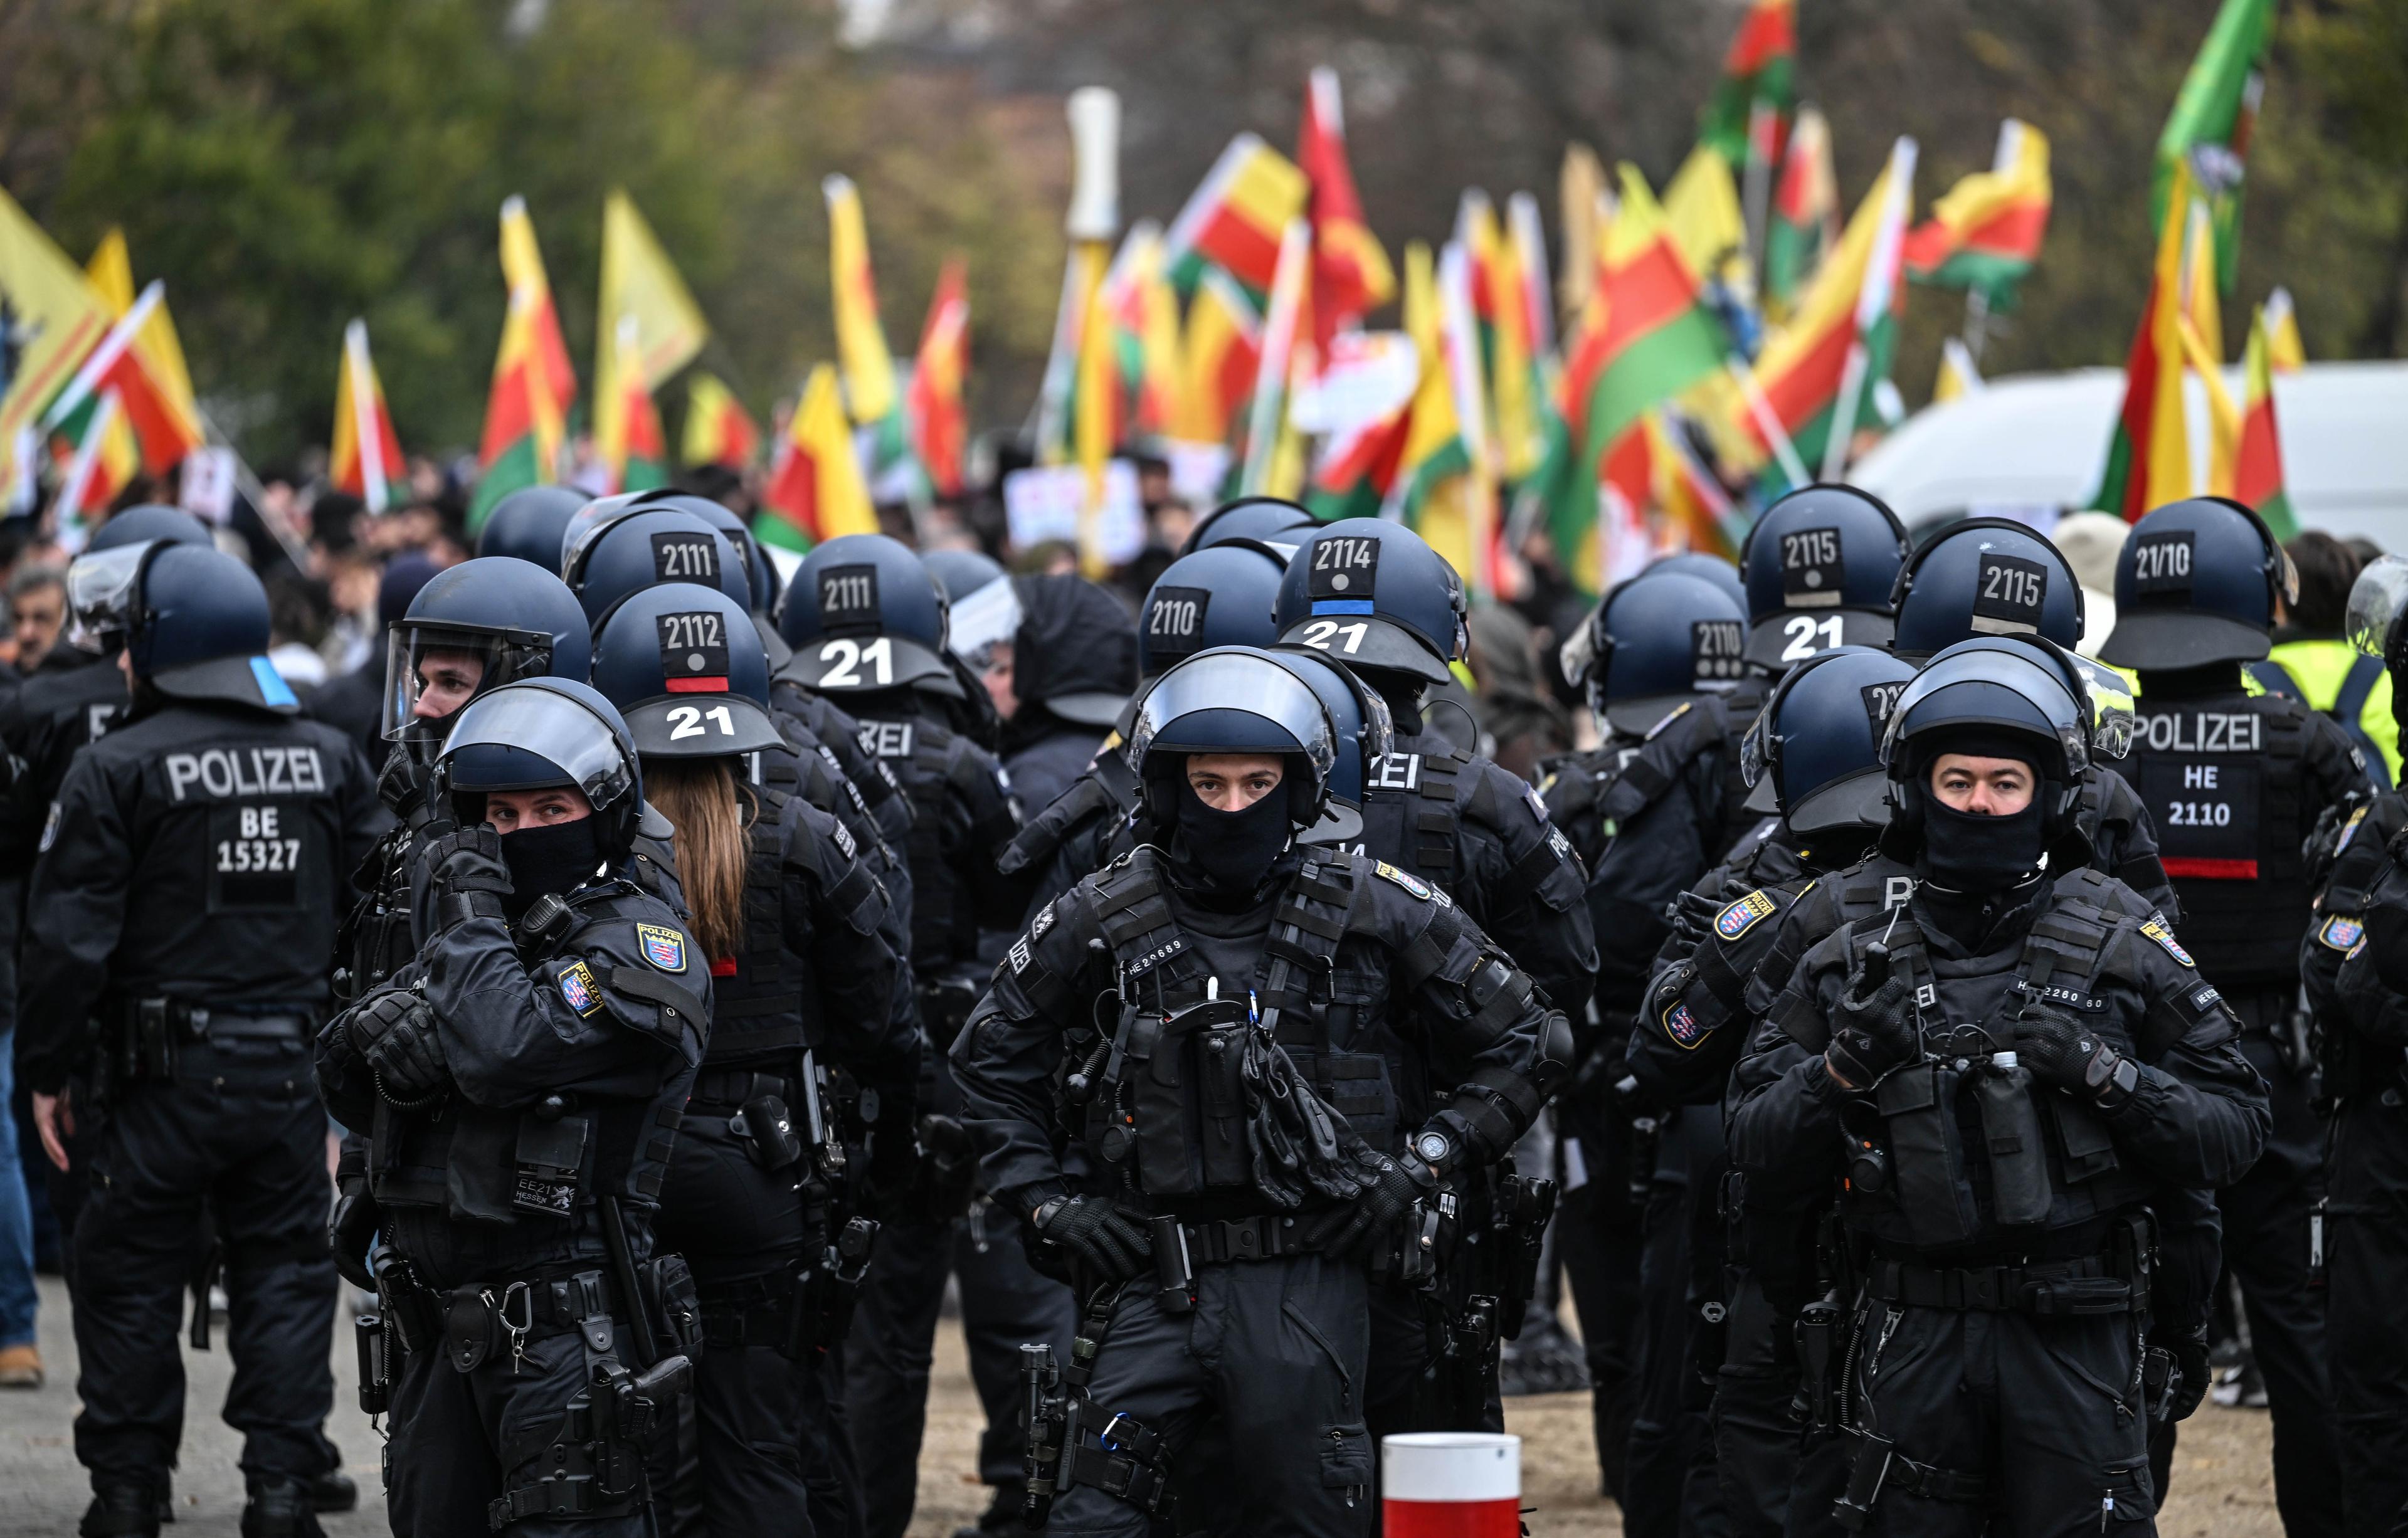 Irakische Polizisten halten während einer Polizeiaktion die Flagge